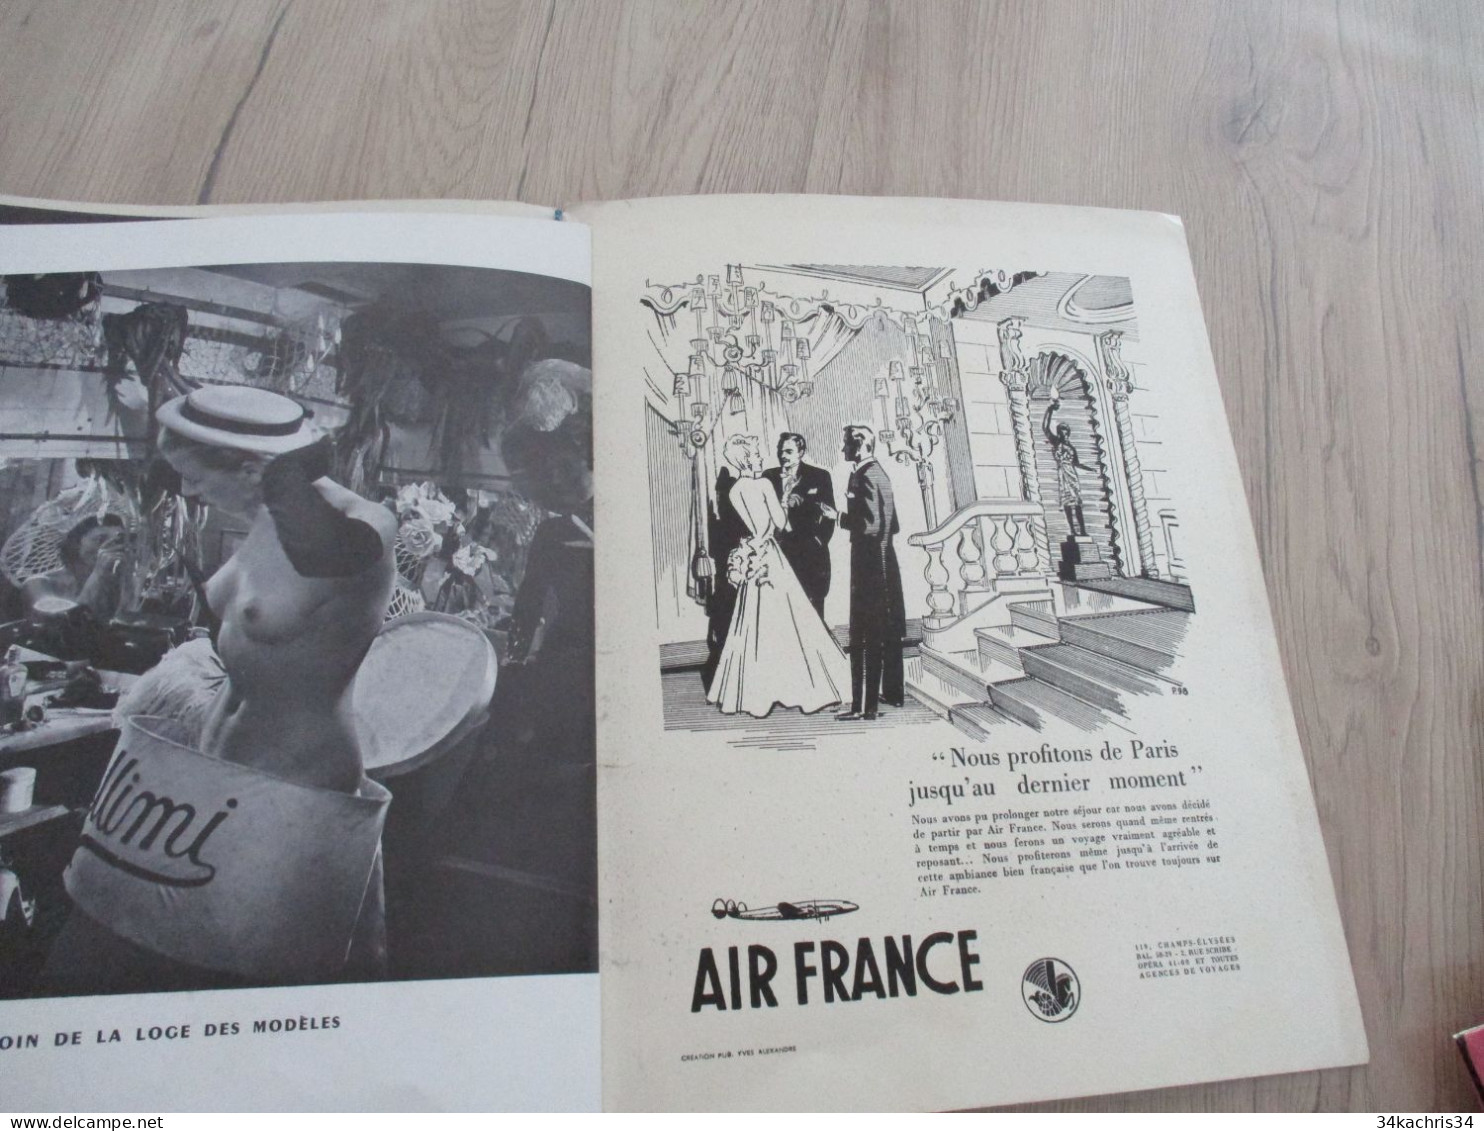 STC 35 Programme illustré Lido Paris Nu NUde 1950 musique spectacle Finnel Cordy cirque magie.....